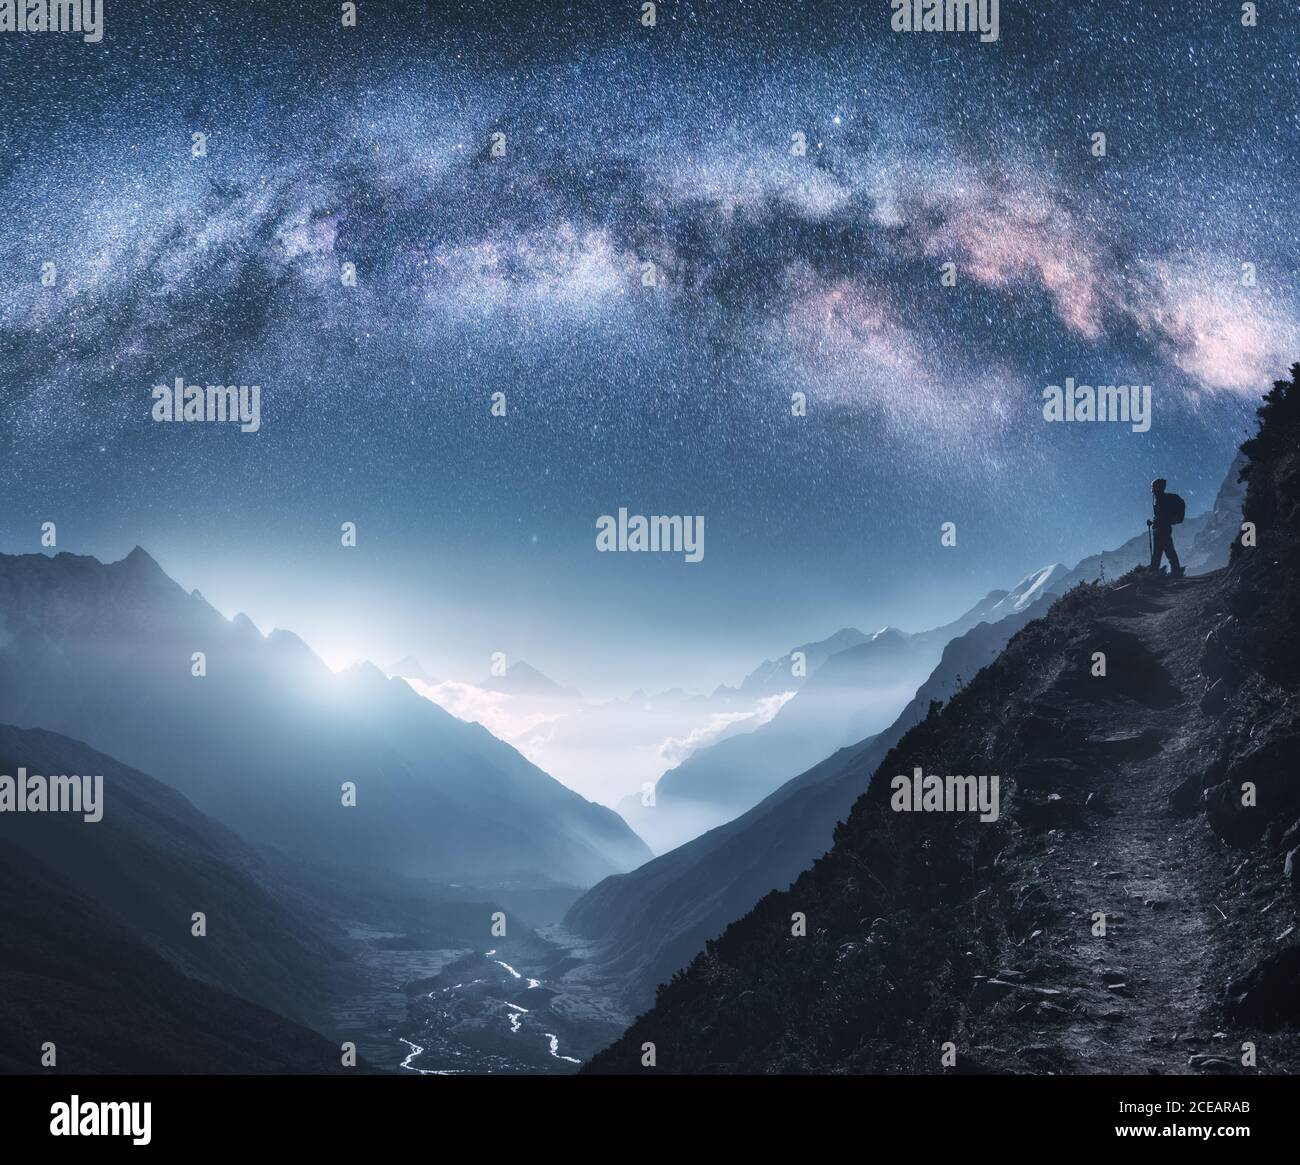 Vía Láctea arqueada, mujer y montañas por la noche Foto de stock